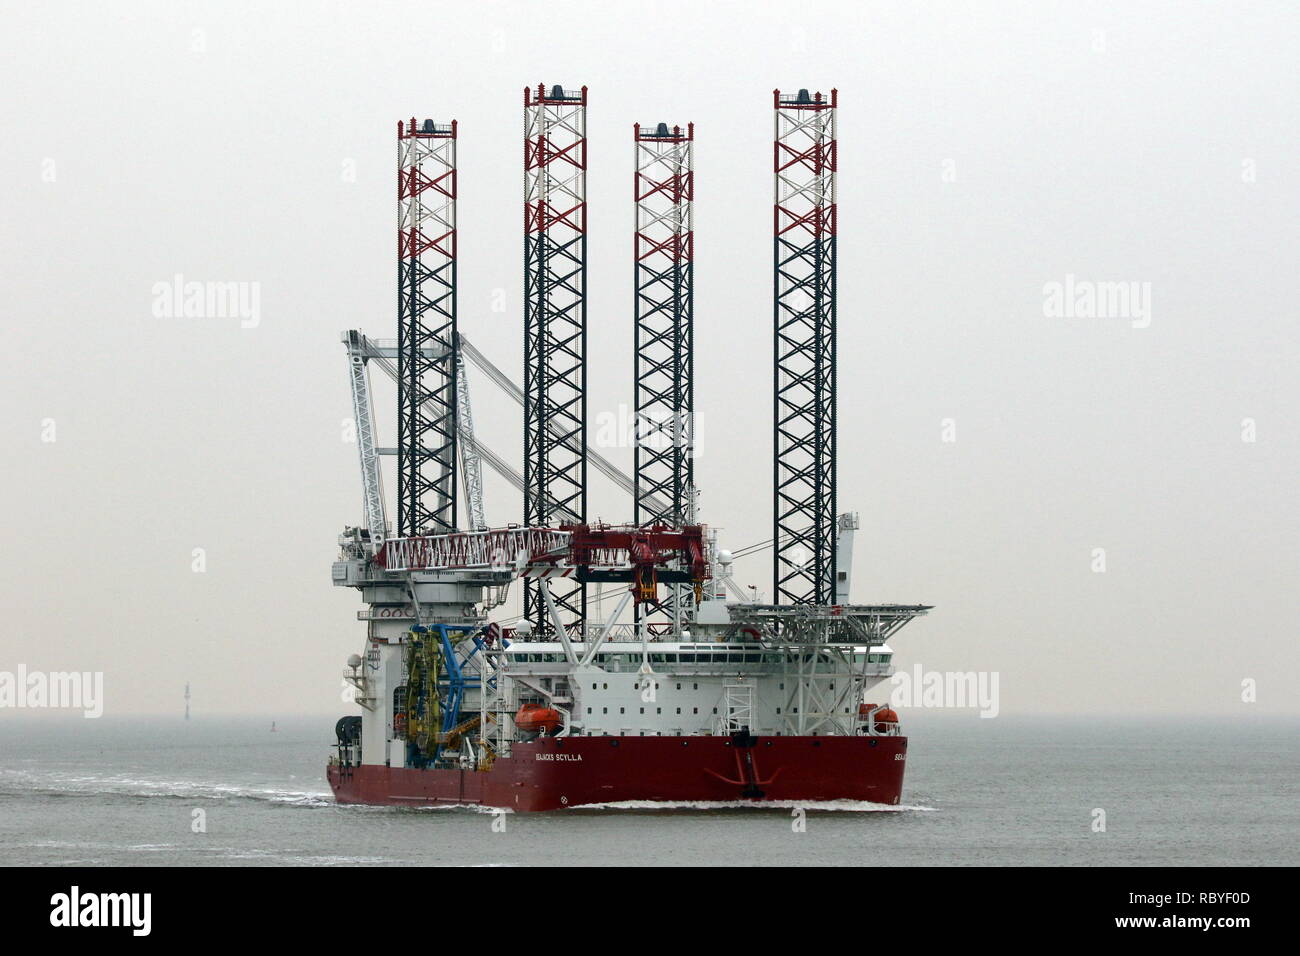 La construction d'éoliennes offshore navire Seajacks Scylla va atteindre le port de Cuxhaven le 29 décembre 2018 Banque D'Images